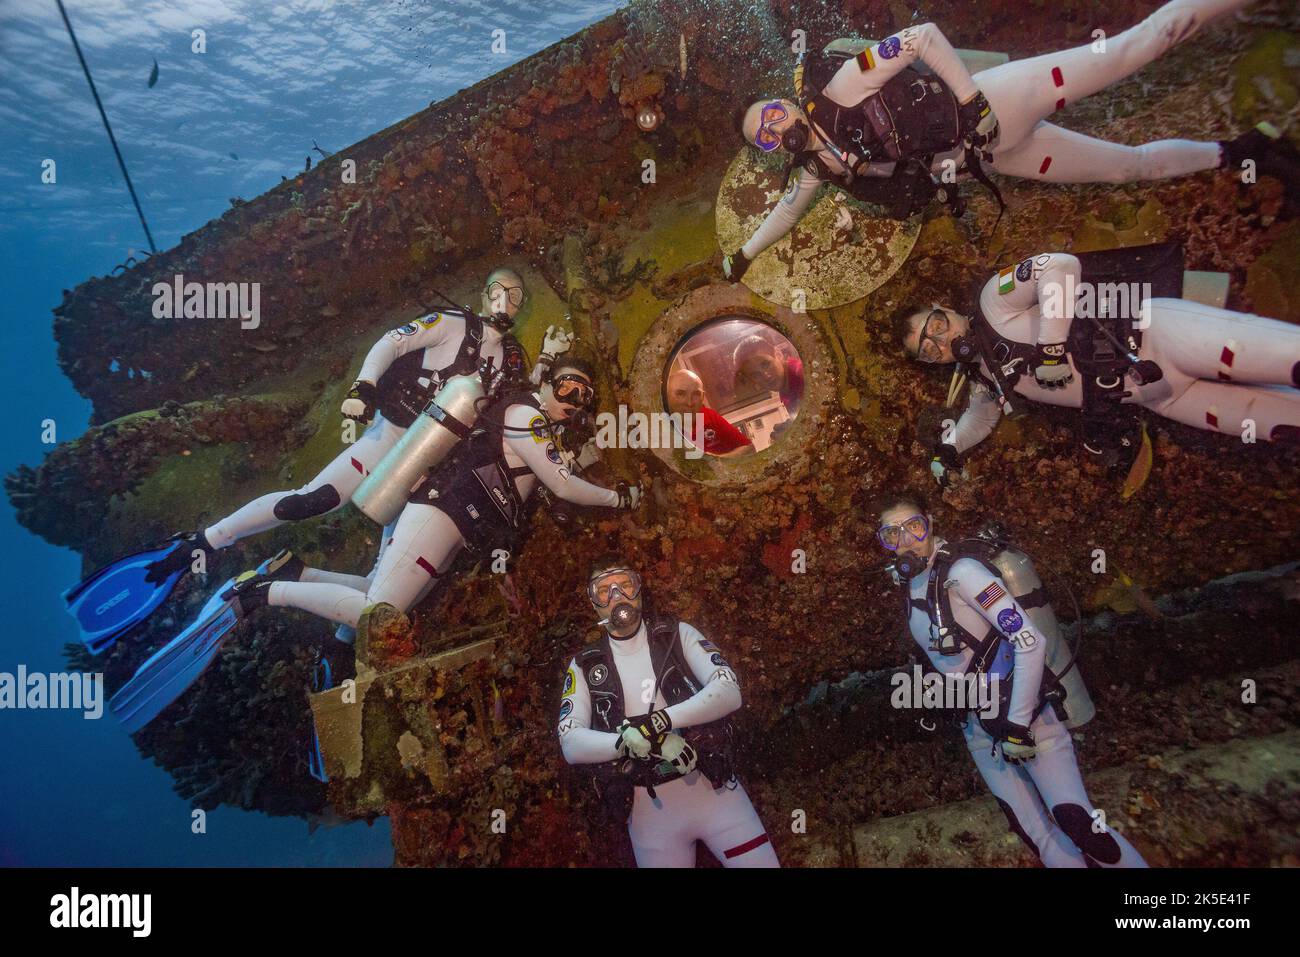 La missione NASA Extreme Environment Mission Operations (NEEMO) 21 è iniziata il 21 luglio 2016, quando un equipaggio internazionale di acquanauti ha raggiunto la base della barriera corallina di Acquarius, 62ft al di sotto della superficie dell'Oceano Atlantico nel Florida Keys National Marine Sanctuary. L'equipaggio NEEMO 21 ha svolto ricerche all'interno e all'esterno dell'habitat durante una missione spaziale simulata di 16 giorni. Durante le simulazioni di veicoli spaziali effettuate sott'acqua, hanno valutato gli strumenti e le tecniche operative della missione che potrebbero essere utilizzate nelle future missioni spaziali?una versione ottimizzata di un'immagine originale della NASA. Credito: NASA/KShreeves. Solo per uso editoriale Foto Stock